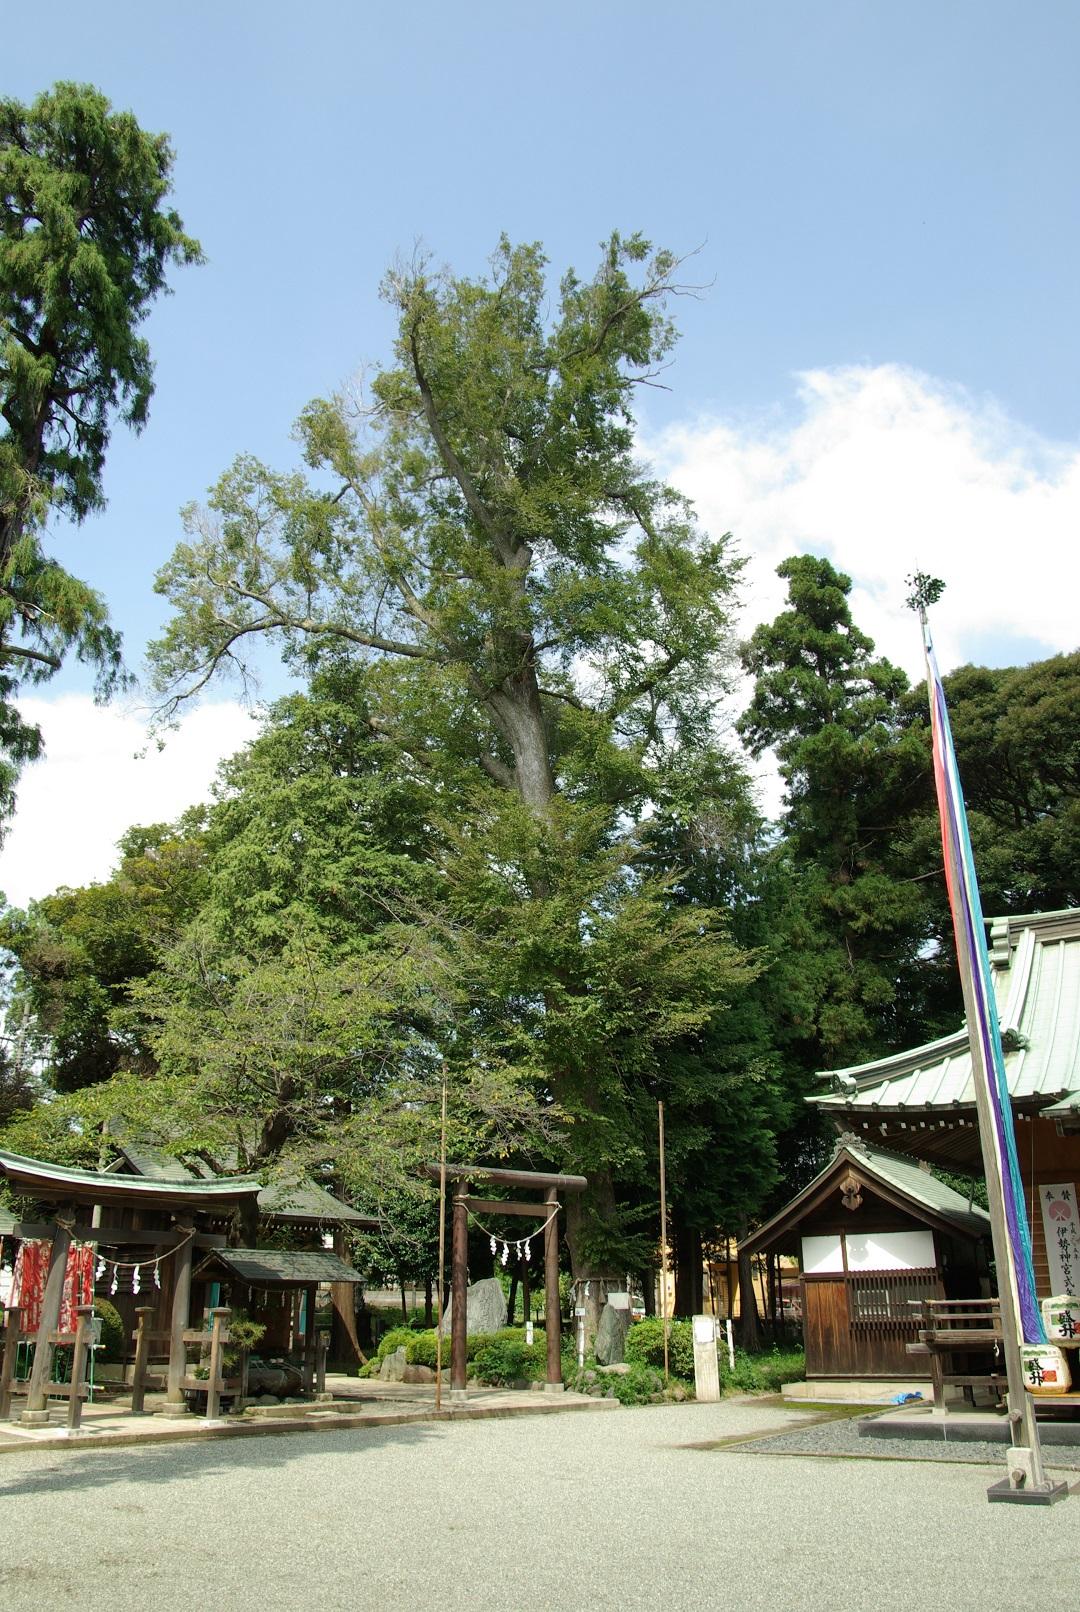 鳥居の後ろに立つ、神社の屋根よりも高く伸びている大きなハルニレ御神木の写真